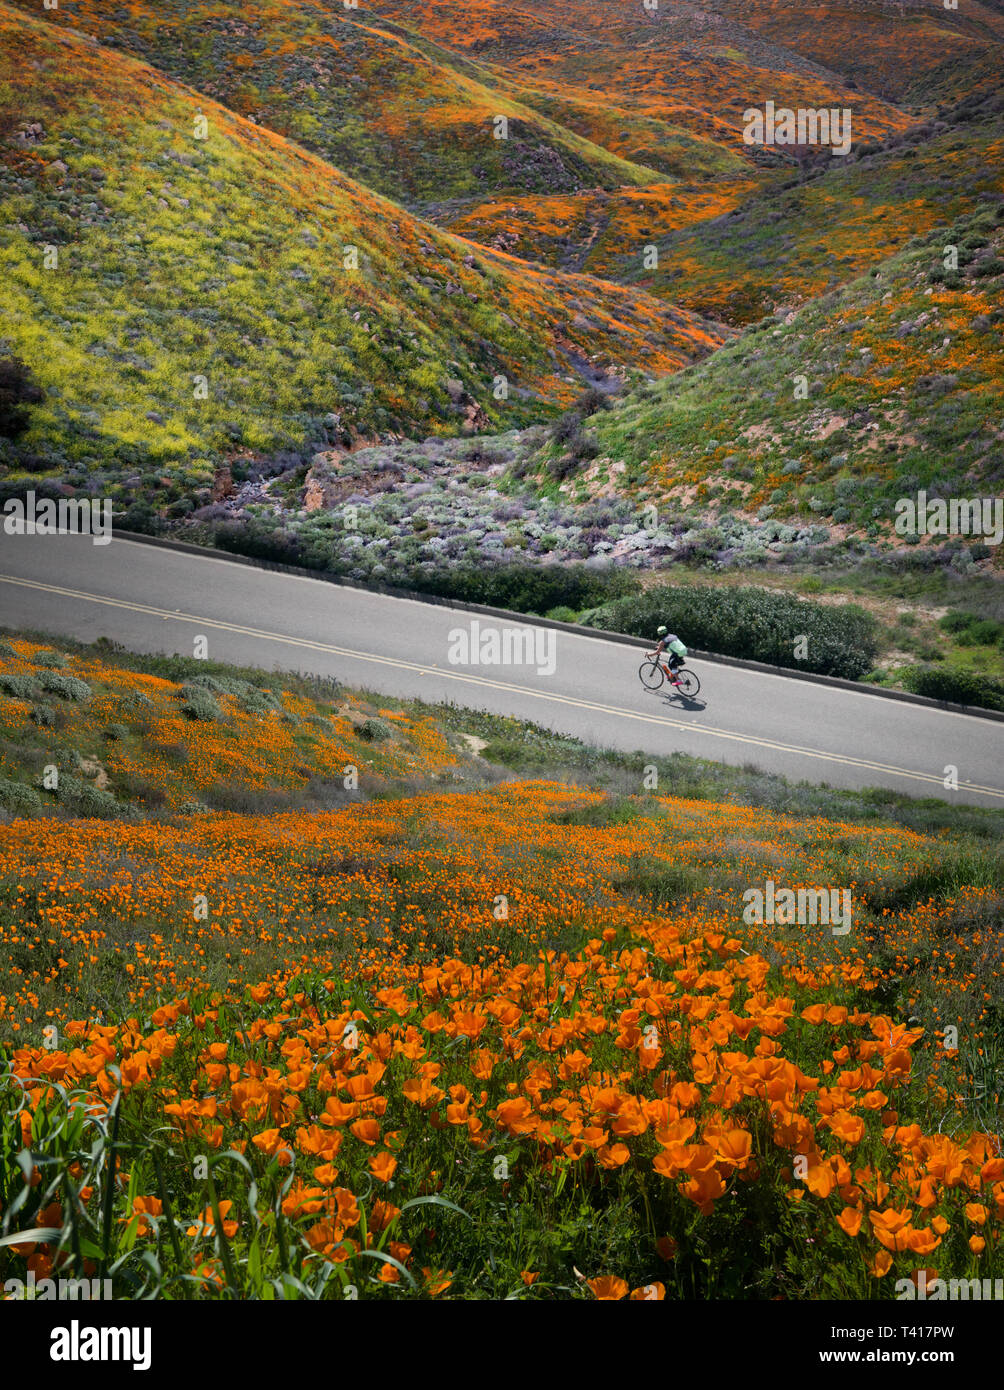 L'homme du vélo dans une vallée avec des fleurs sauvages, United States Banque D'Images